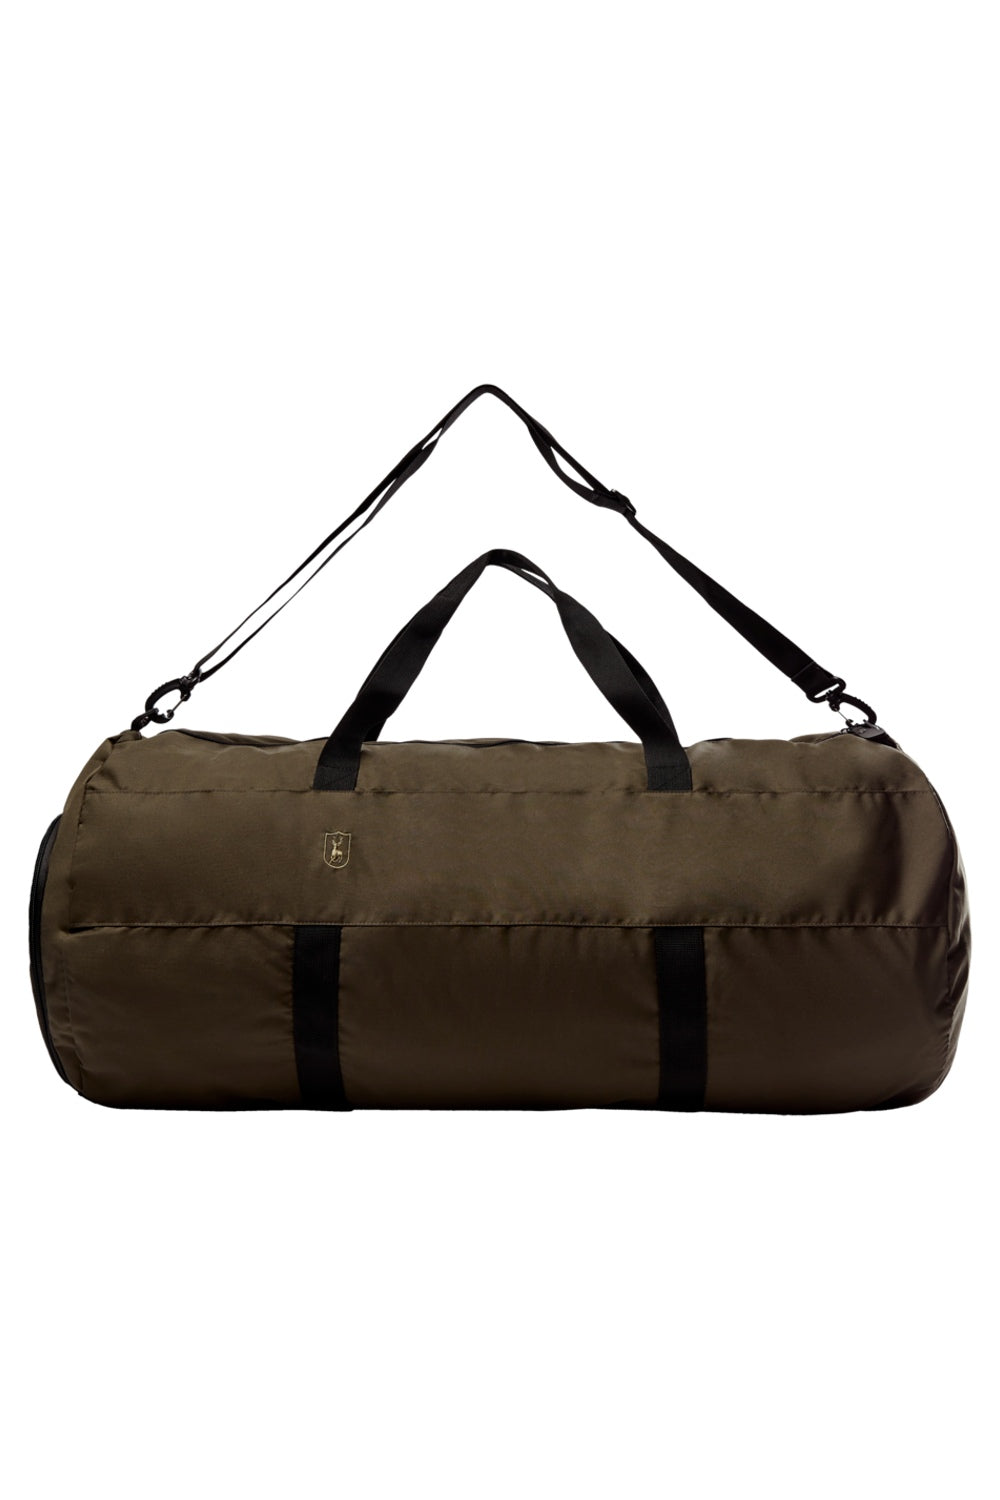 Deerhunter Large Duffel Bag